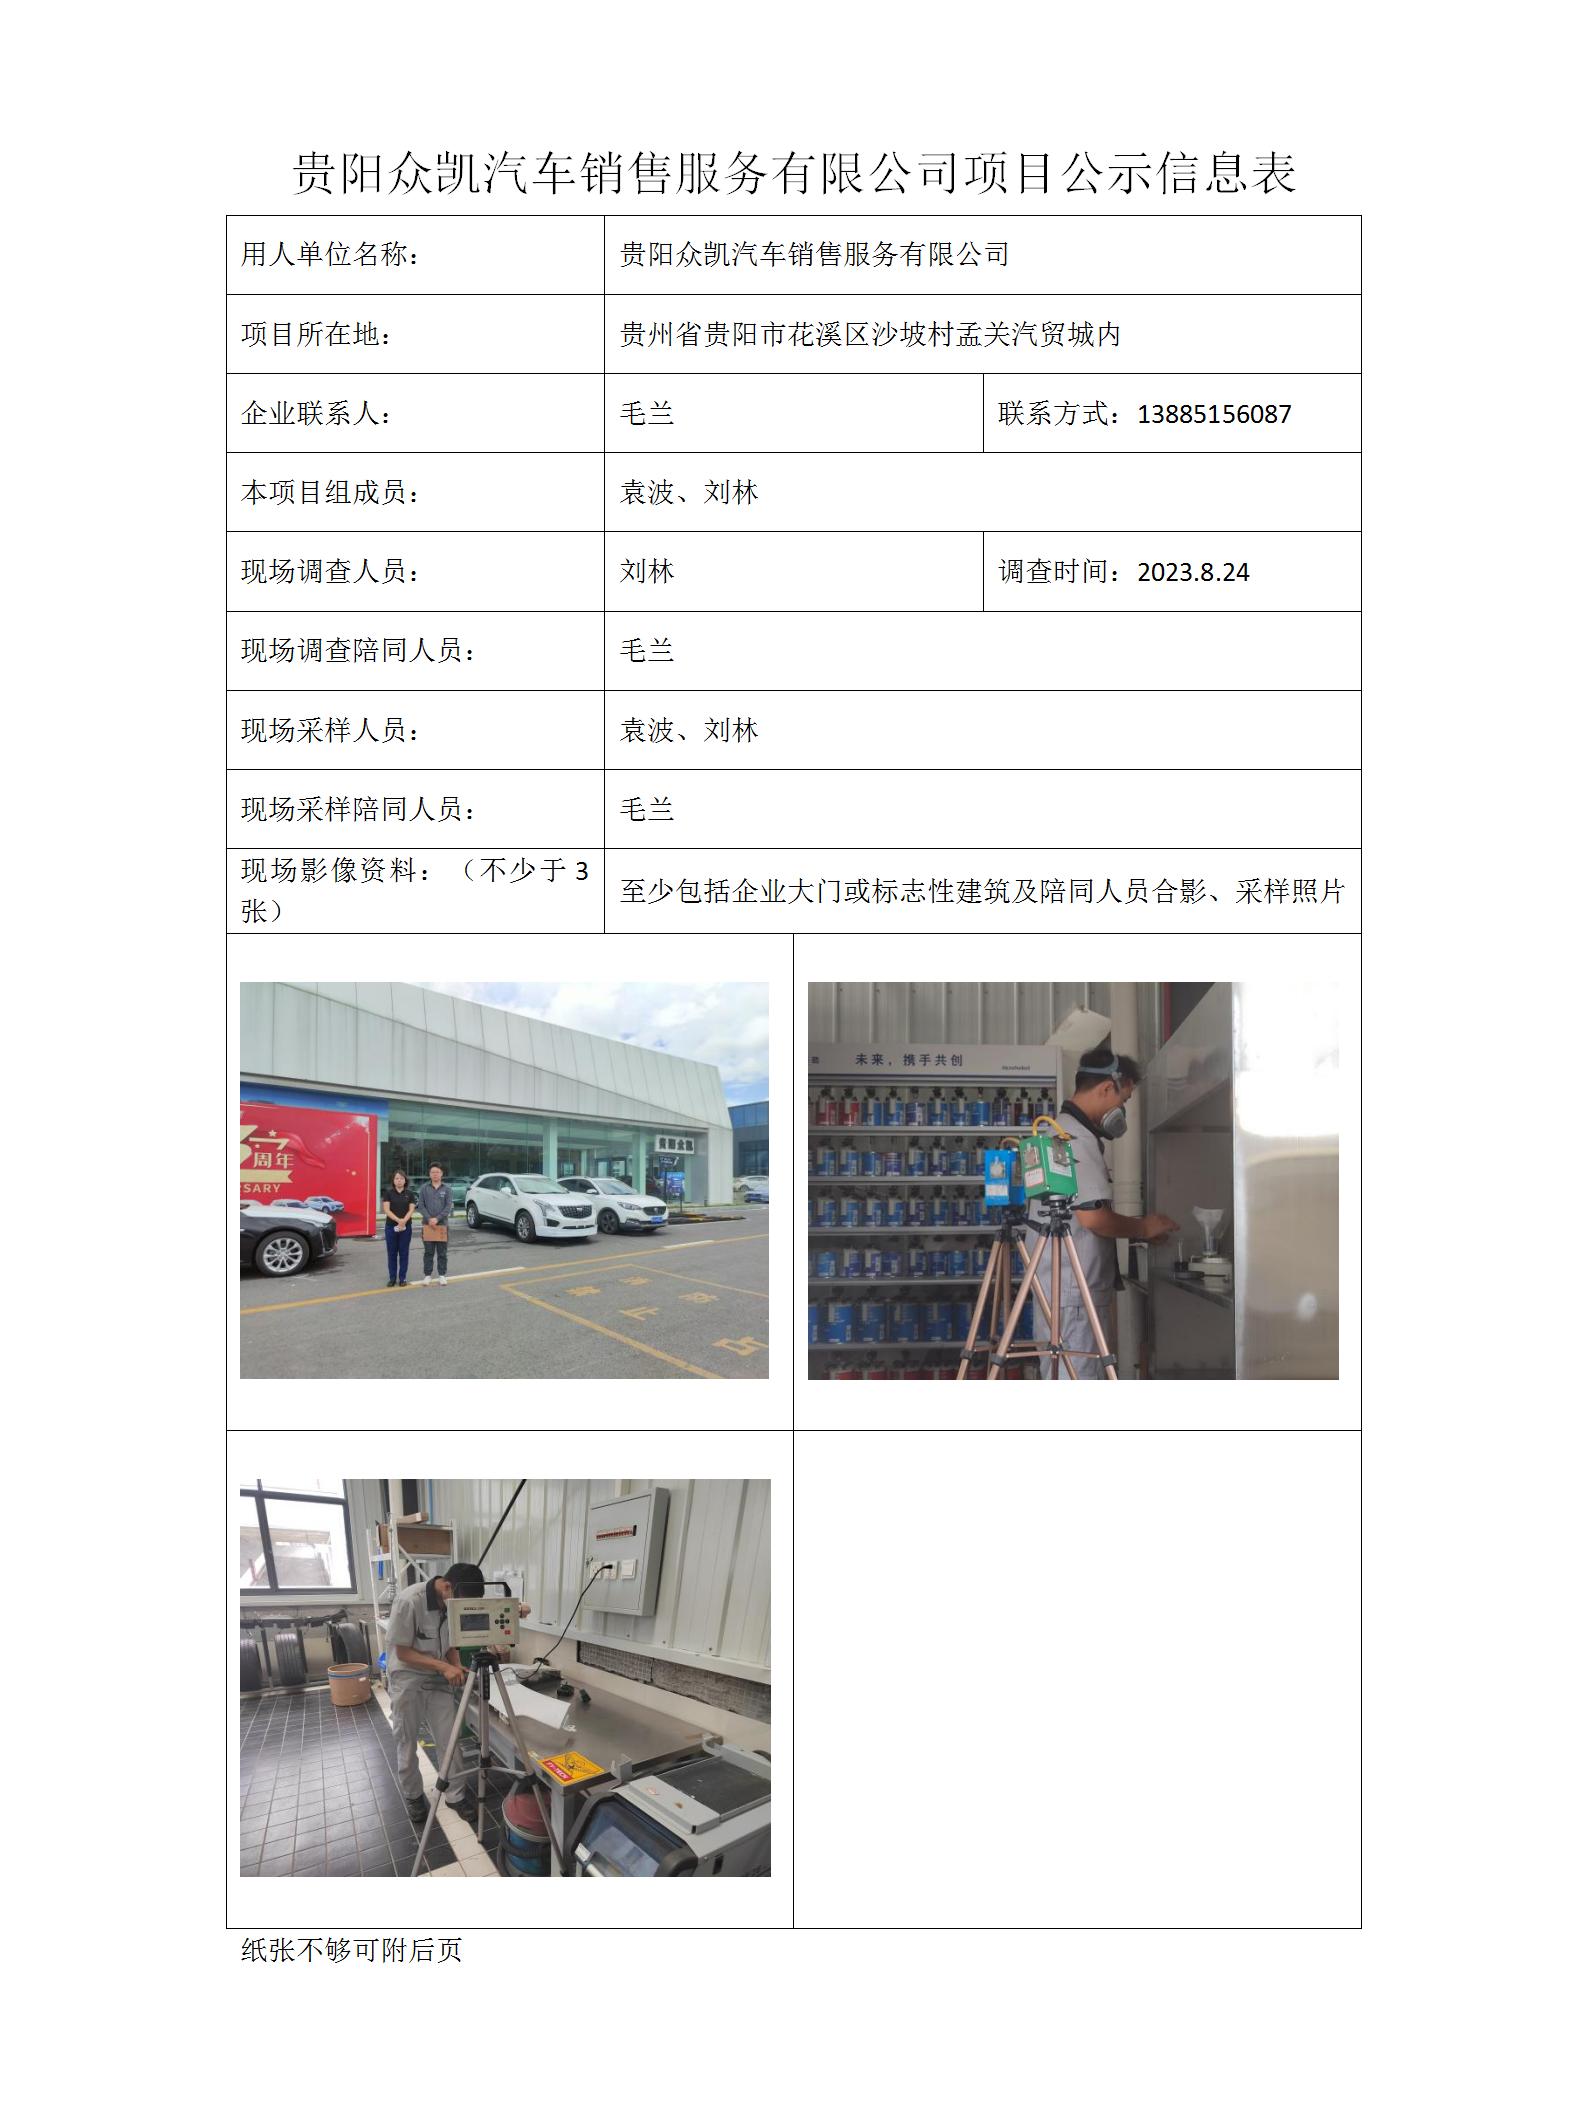 项目公示信息表-刘林-众凯汽车_01.jpg